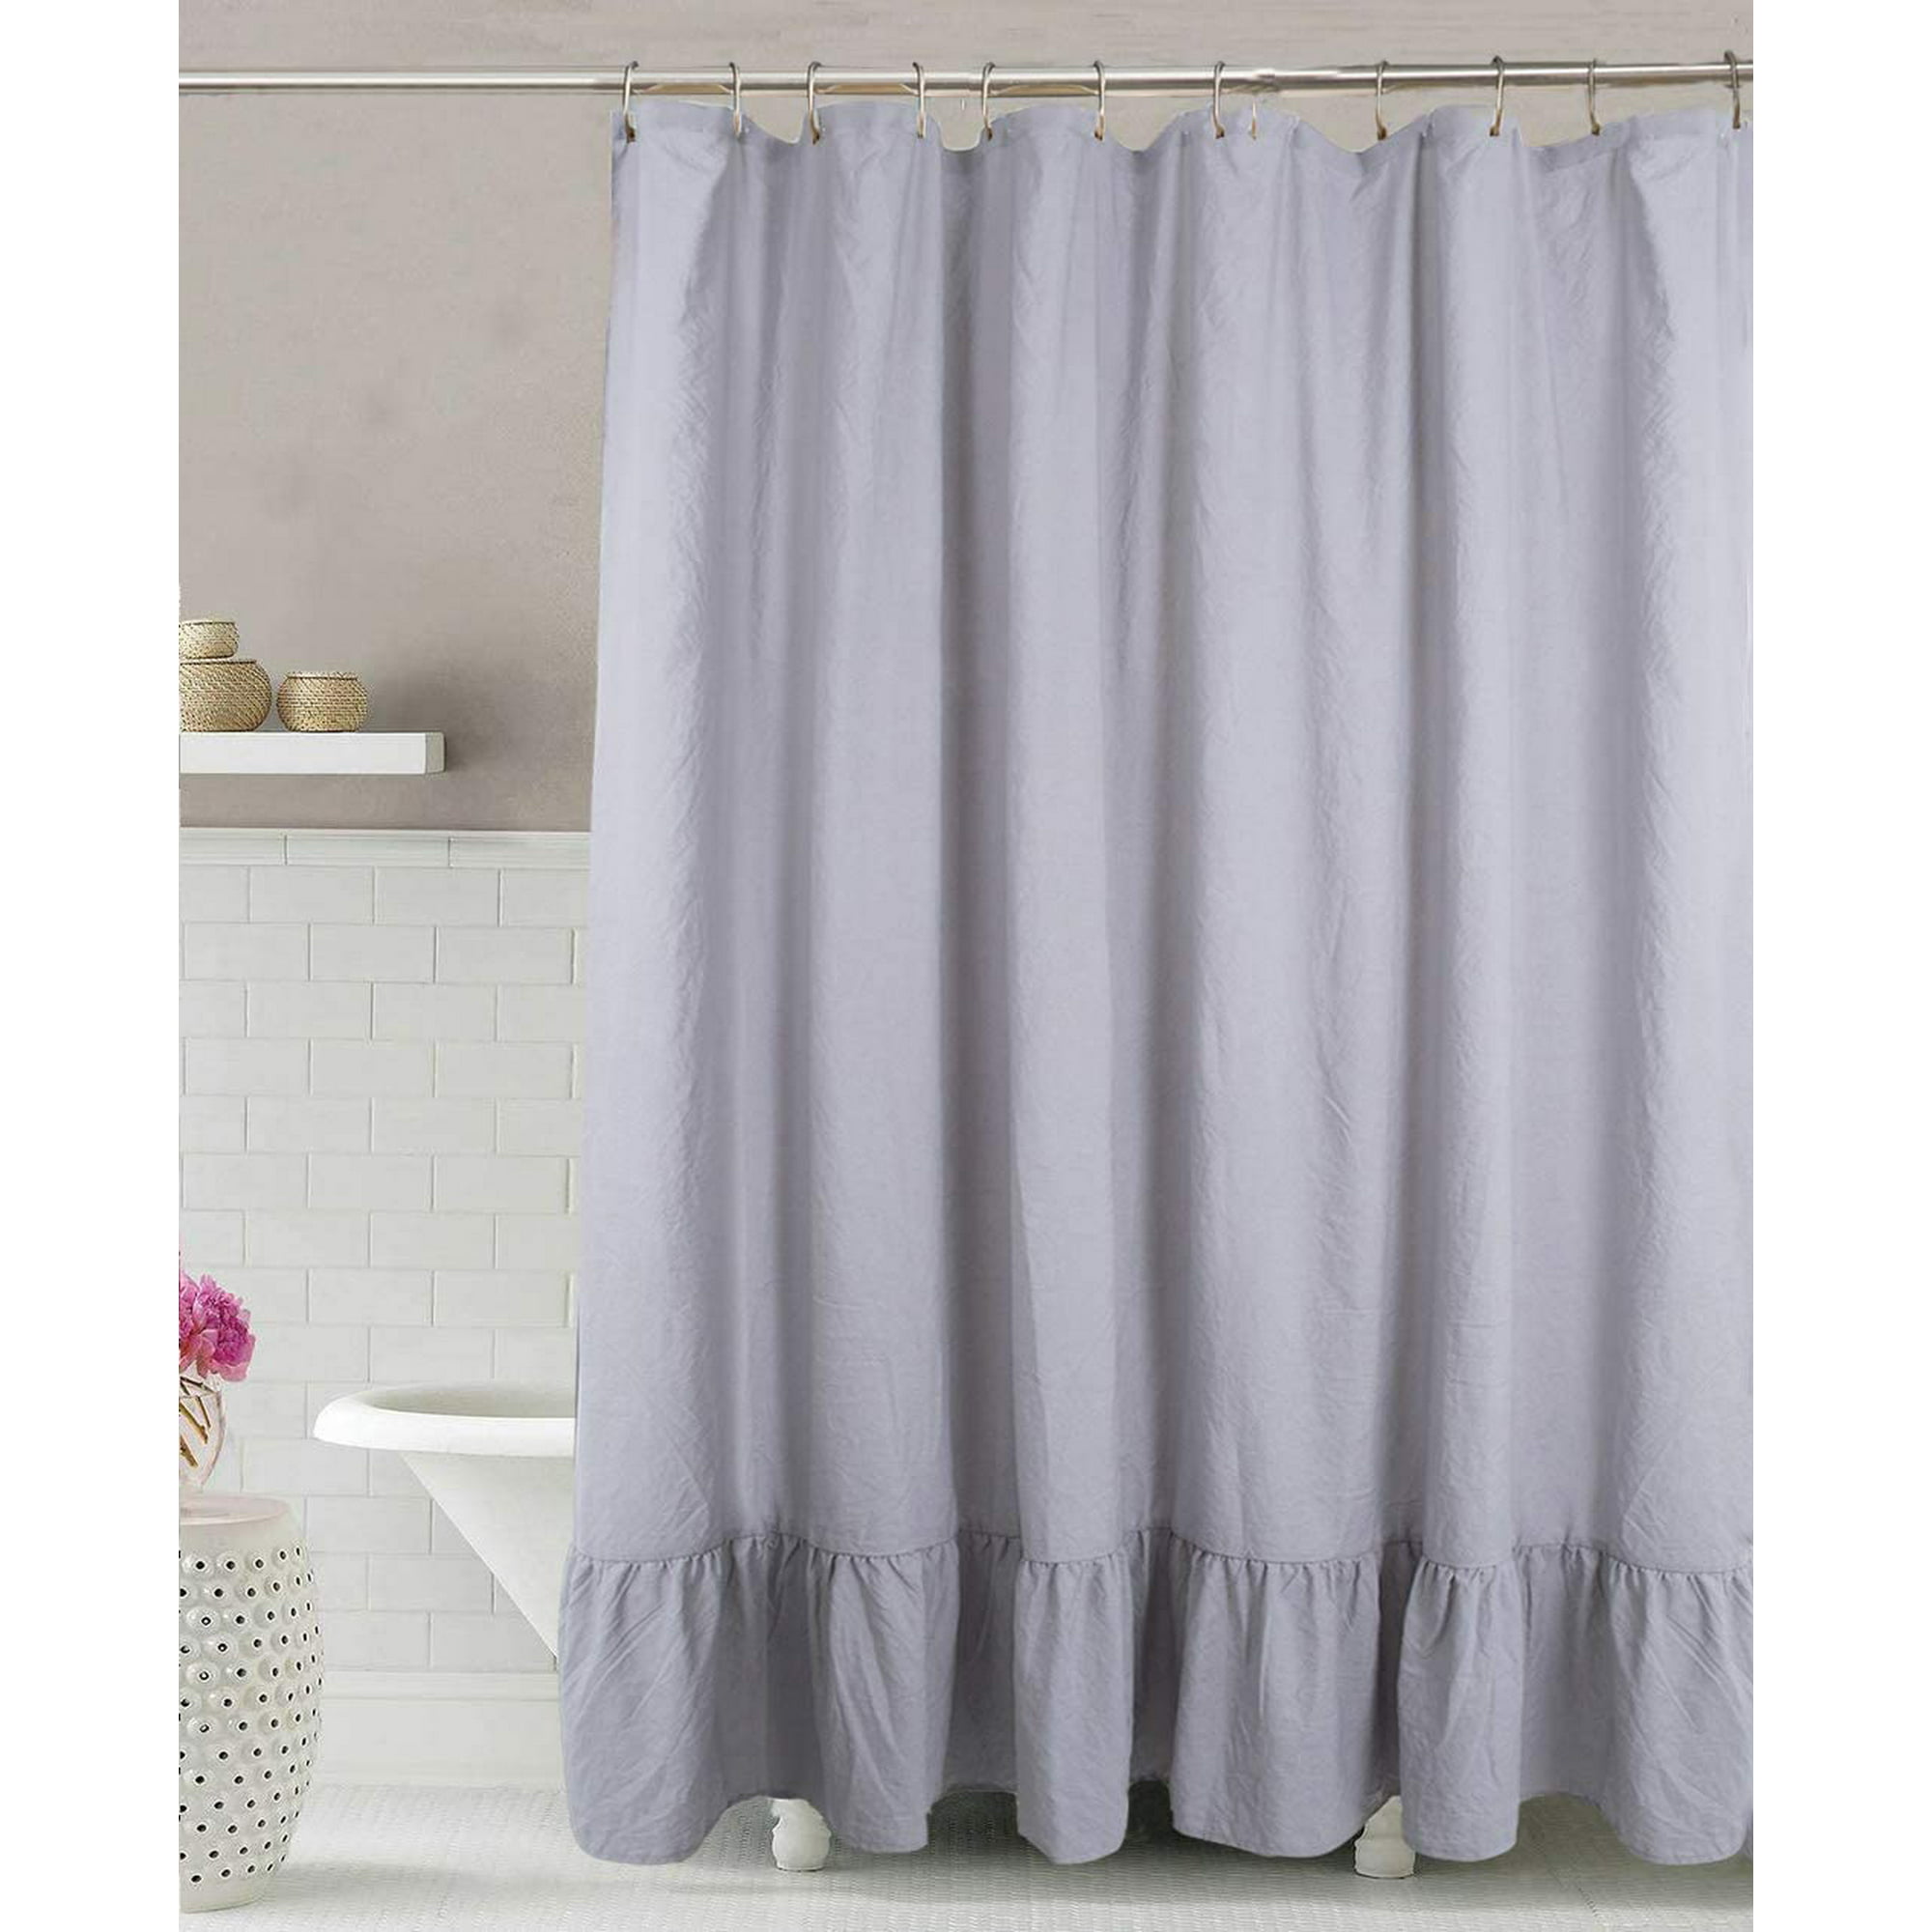 Gray Ruffle Shower Curtain Soft, Cotton Ruffle Shower Curtain